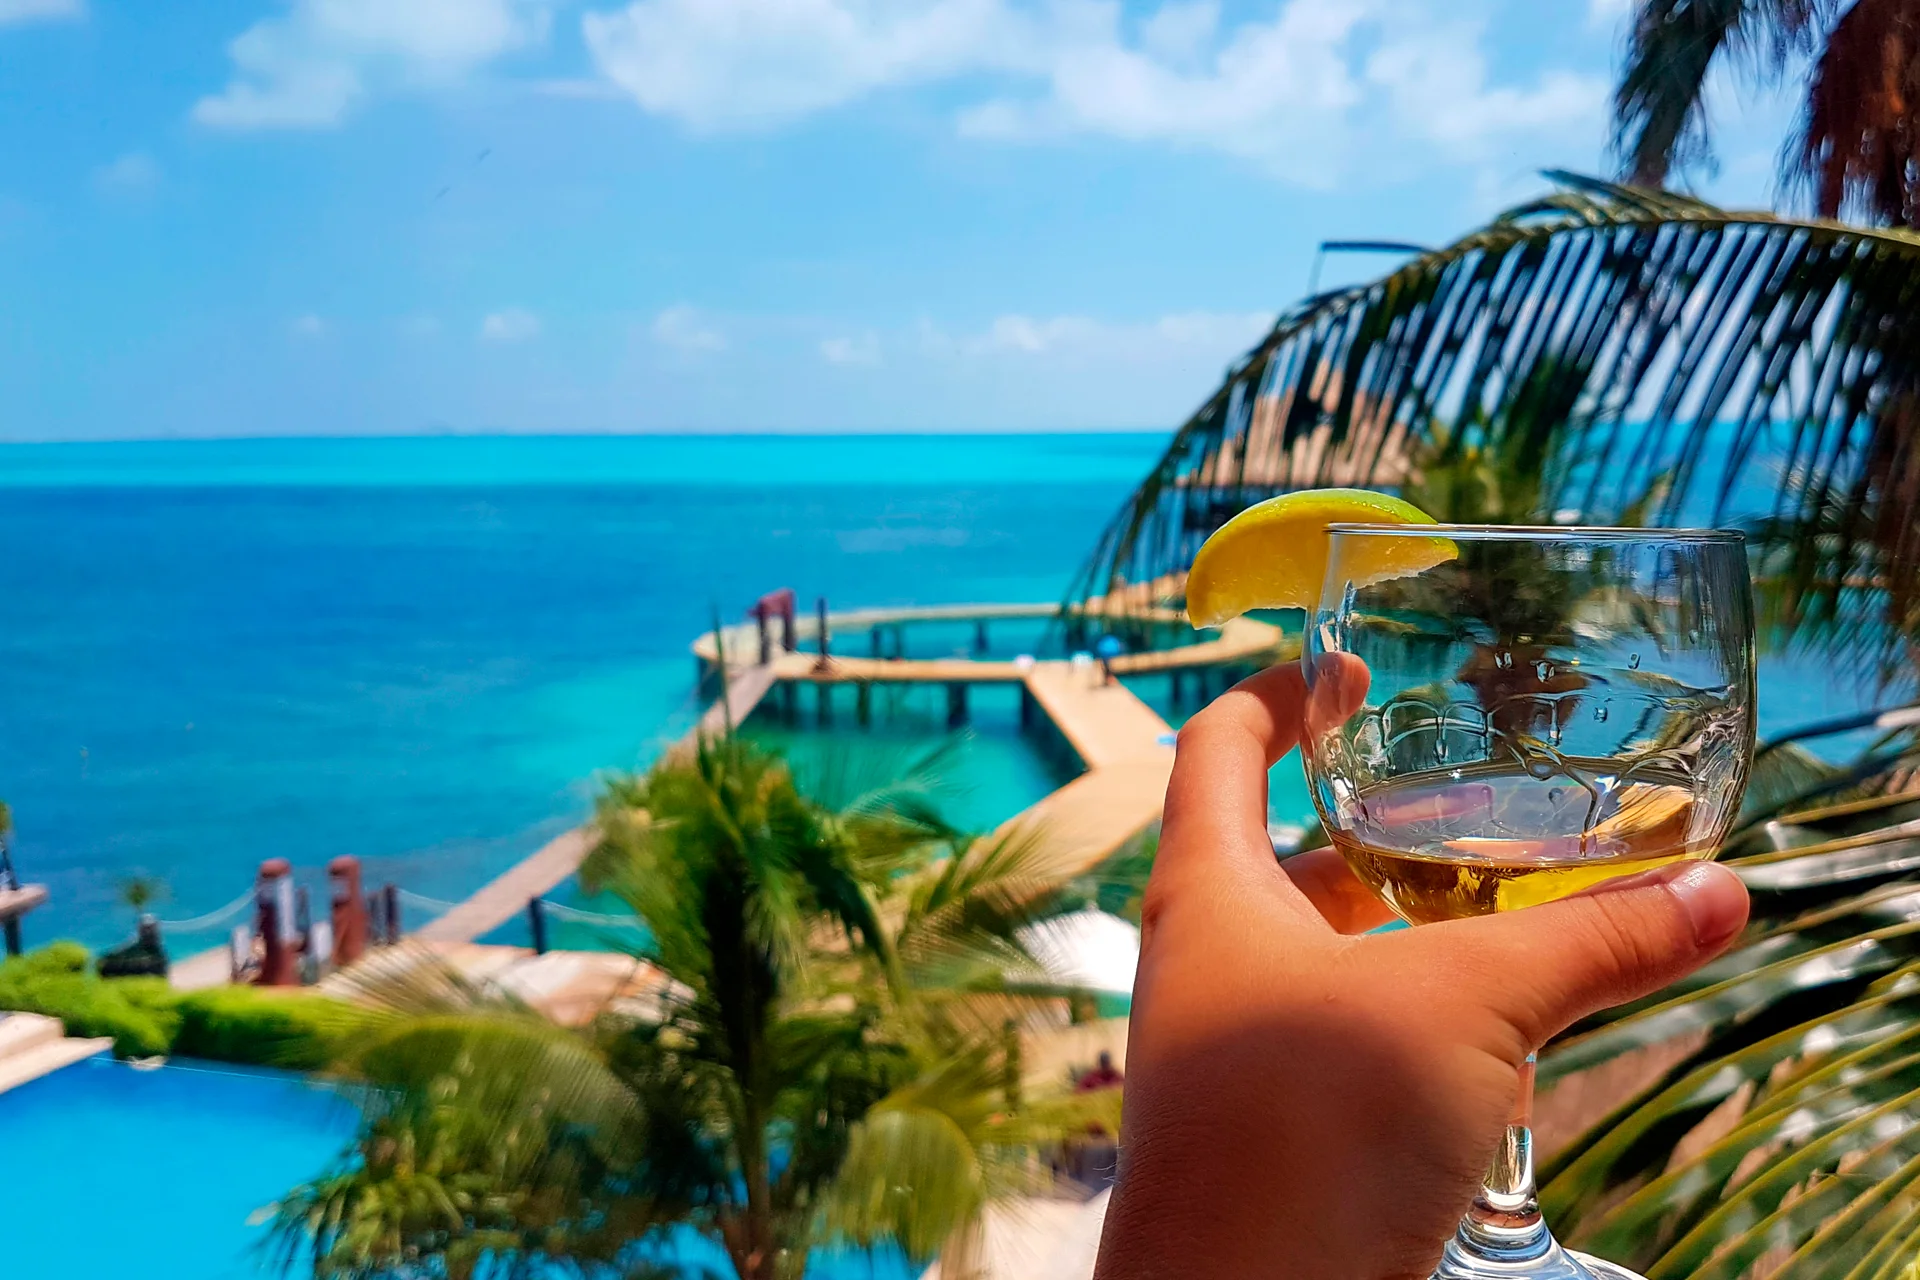 Invitado disfrutando de unas vacaciones en el mar Caribe